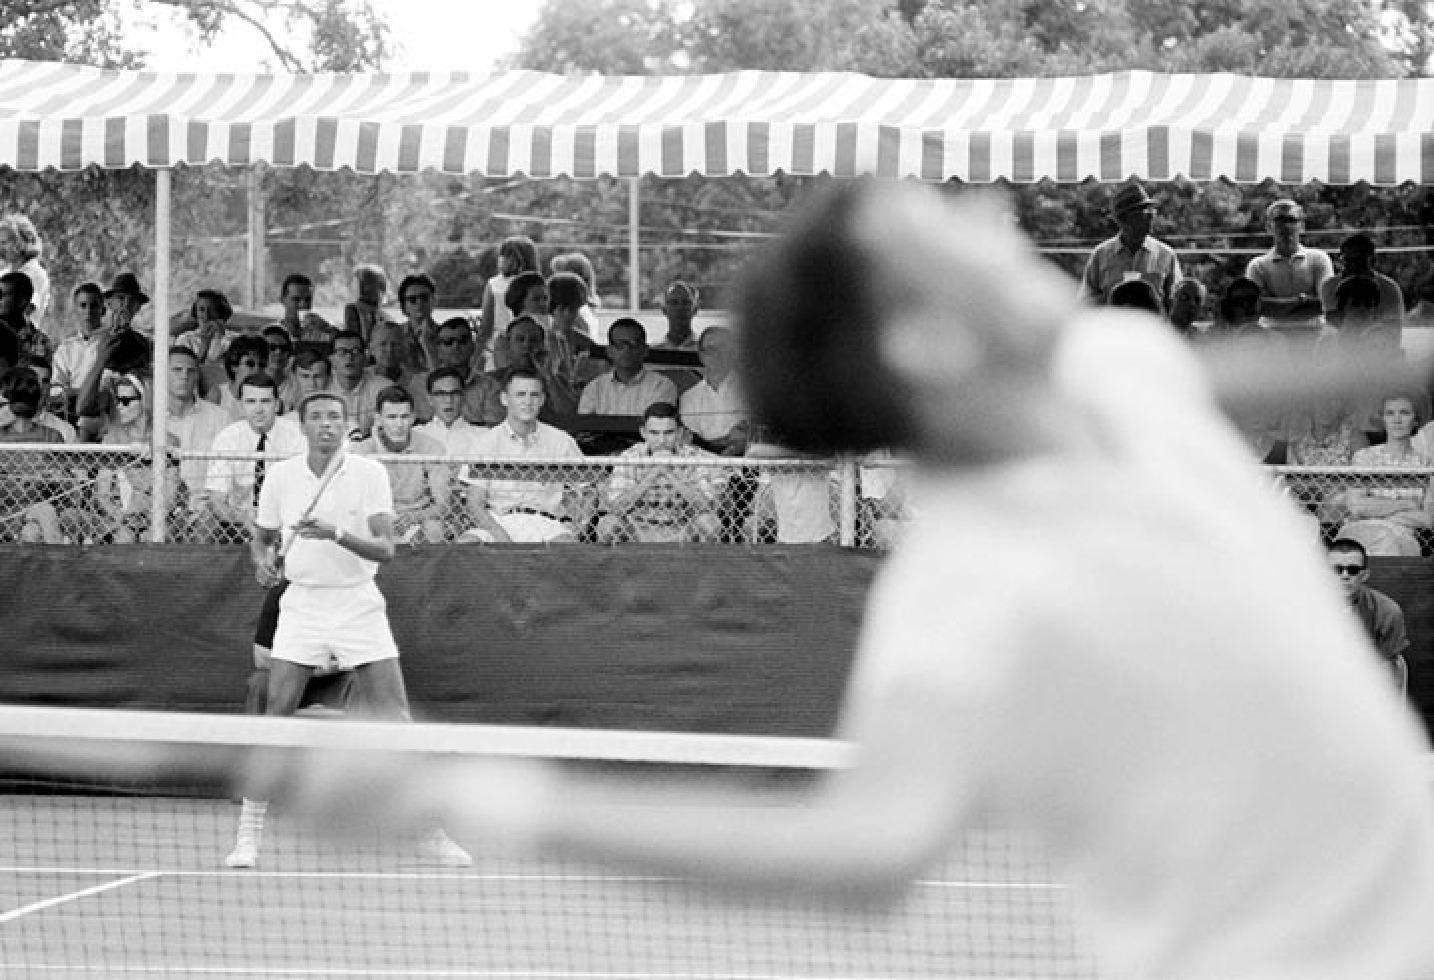 Rowland Scherman Black and White Photograph – Arthur Ashe während eines Tennisspiels